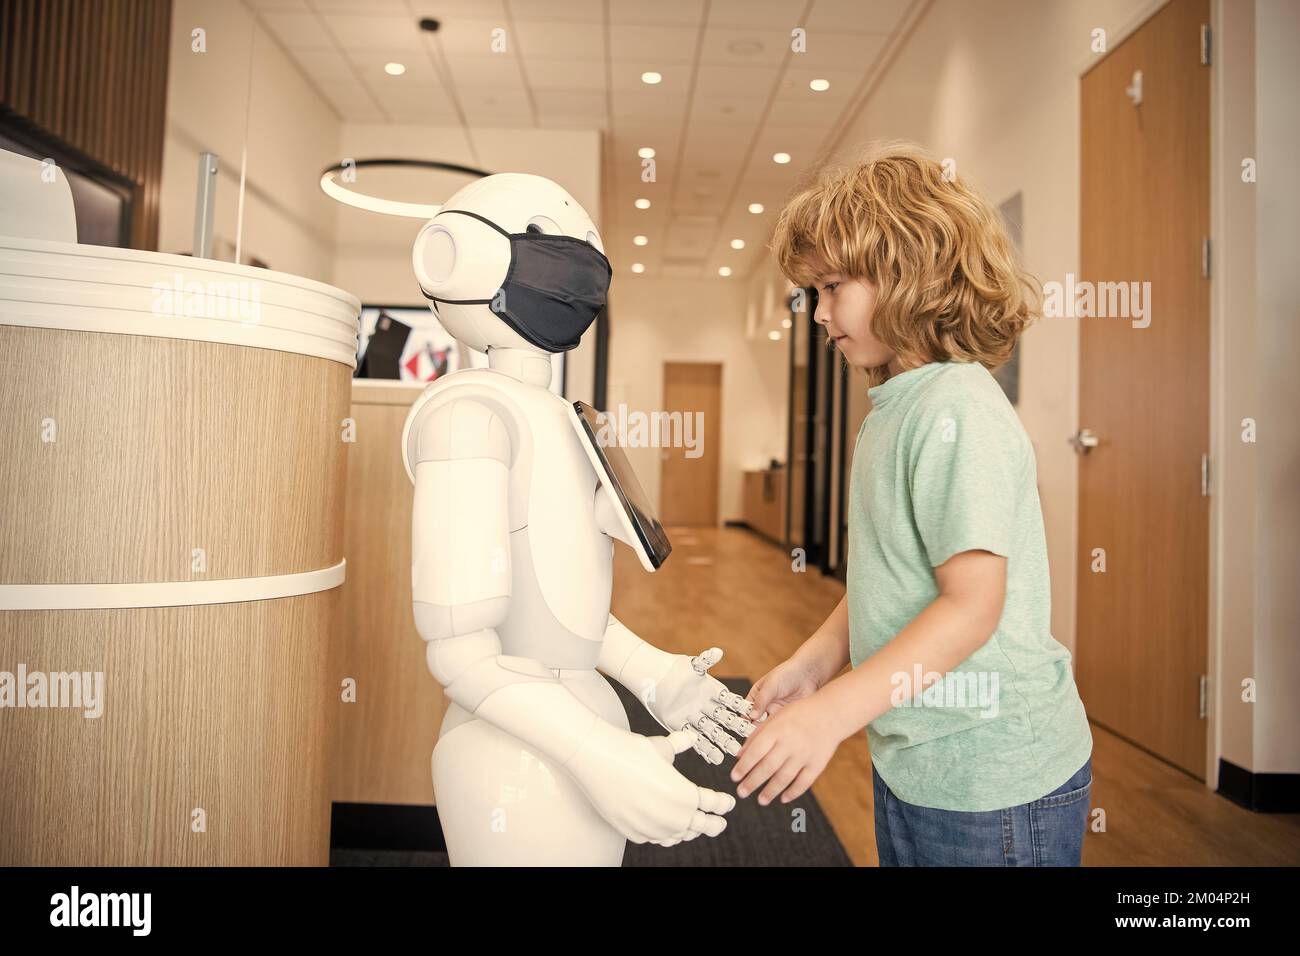 un enfant occupé interagit avec l'intelligence artificielle du robot, la communication Banque D'Images